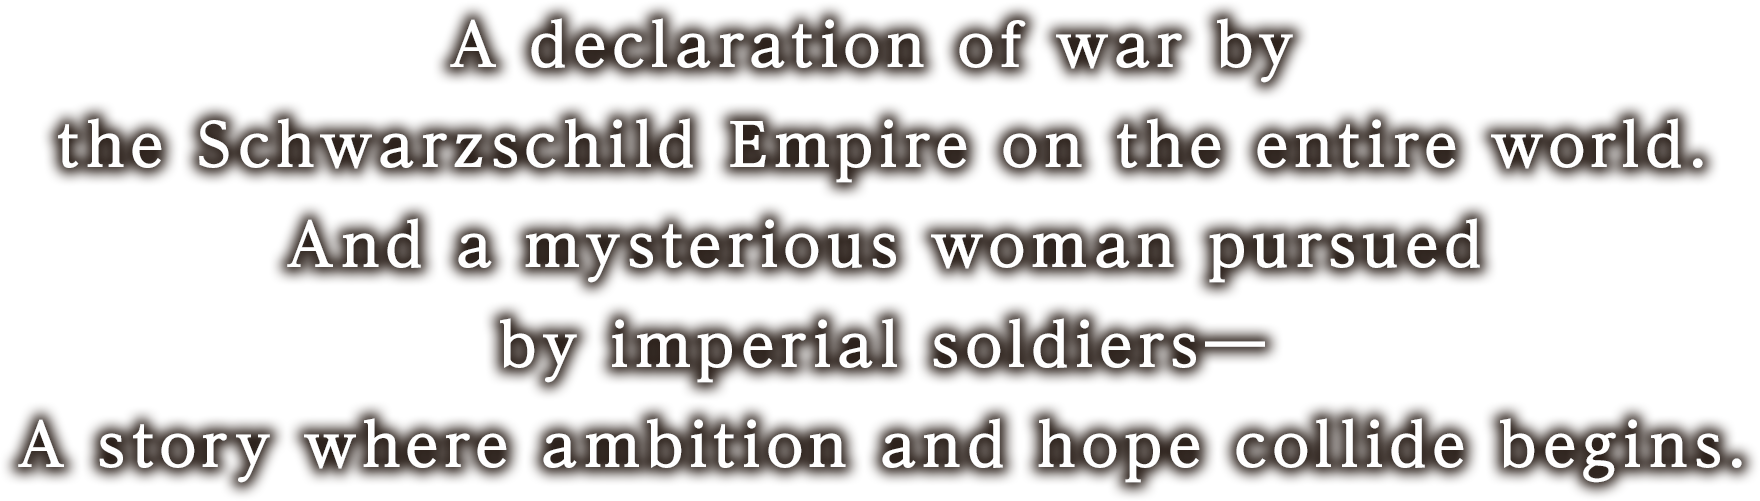 シュバルツシルト皇国による全世界への宣戦布告。そして皇国兵に追われる謎の女性――
野望と希望とが交錯する物語が始まる。